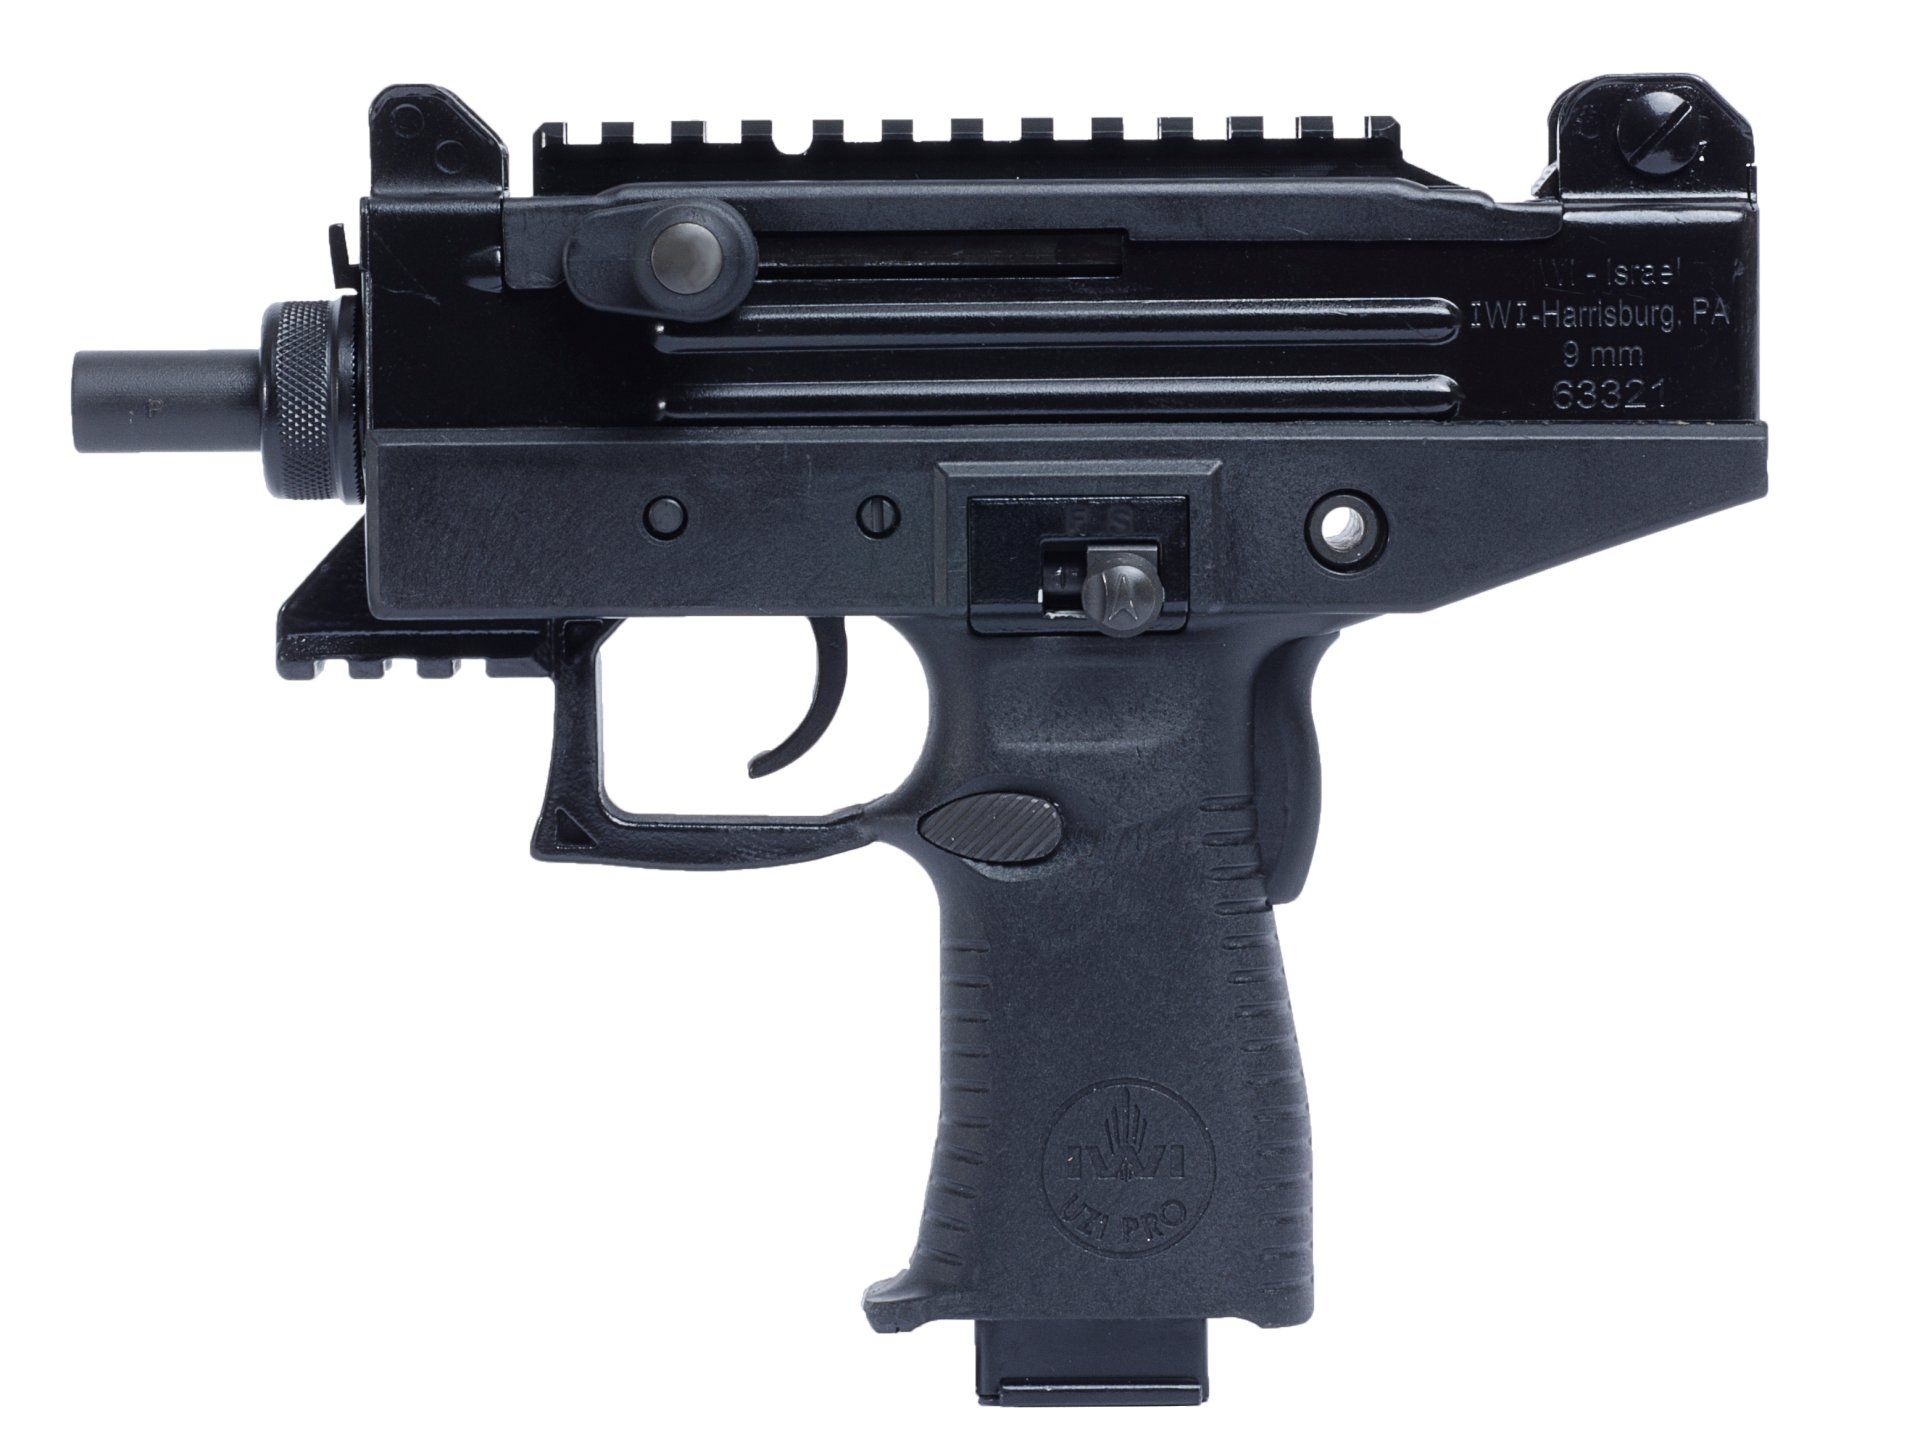 Uzi Pro Sub Machine Gun Pistol HD Wallpaper